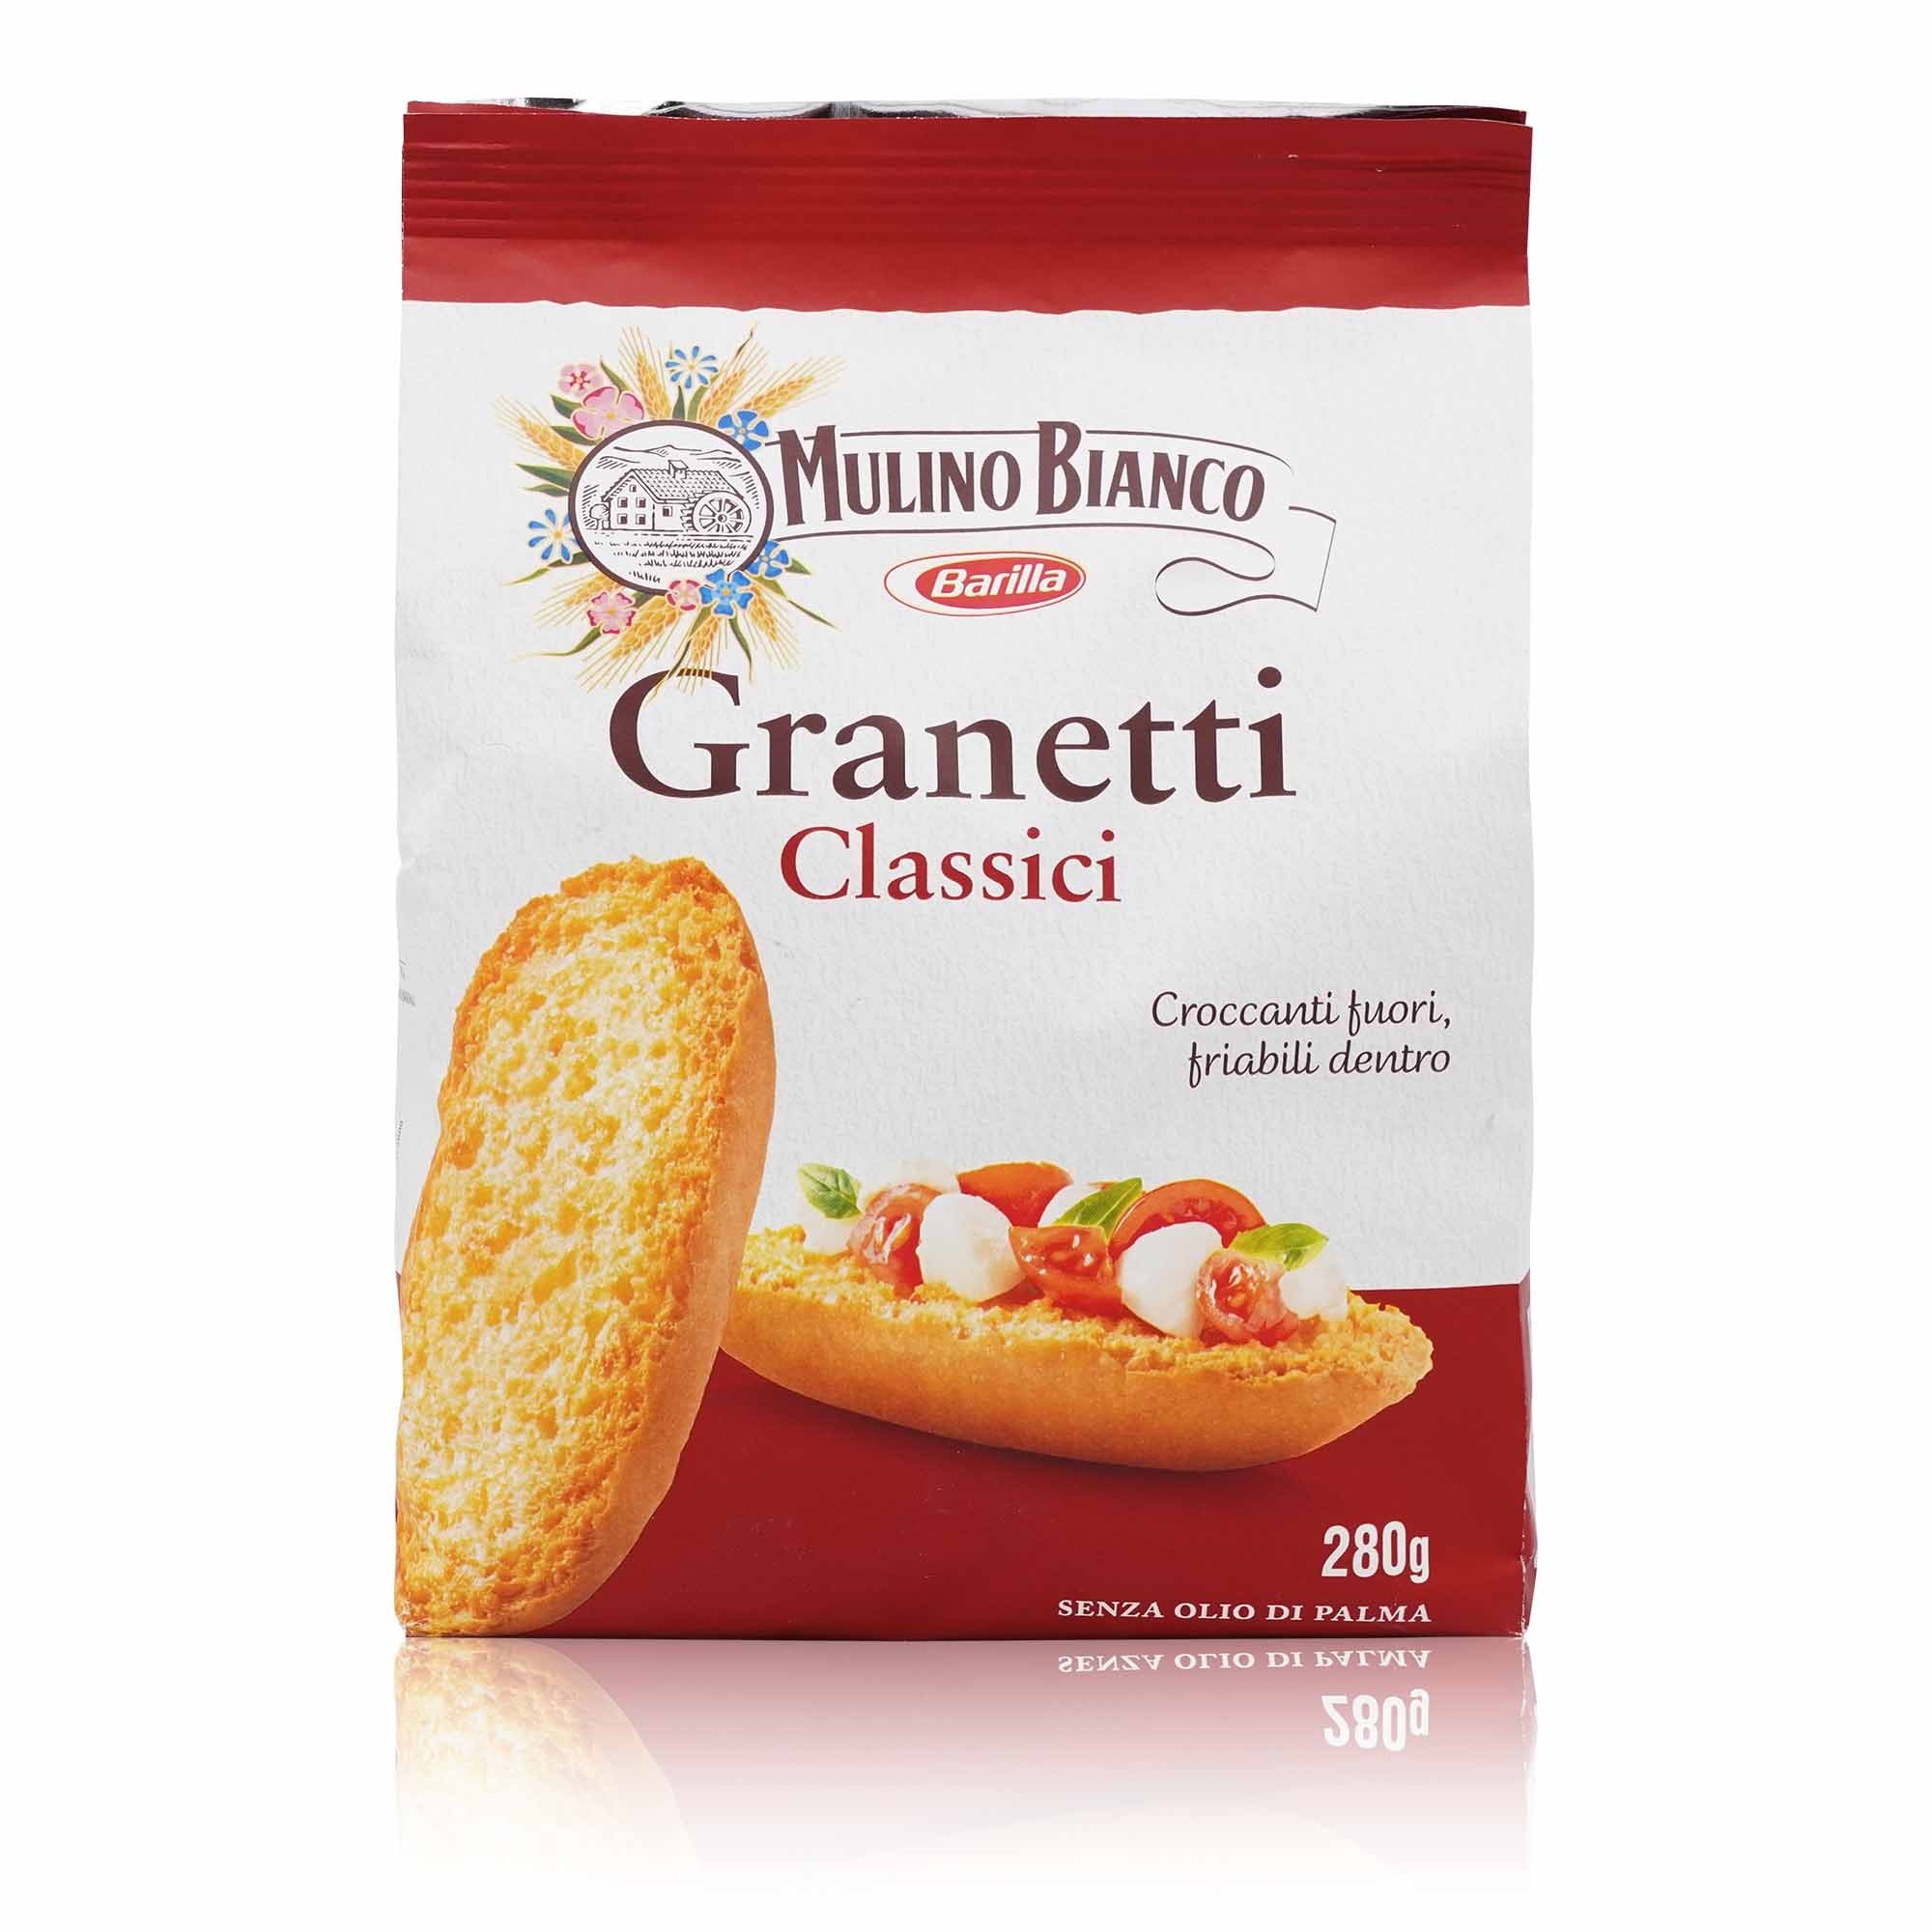 MULINO BIANCO Granetti Classici – Hartkekse klassisch - 0,280kg - italienisch-einkaufen.de